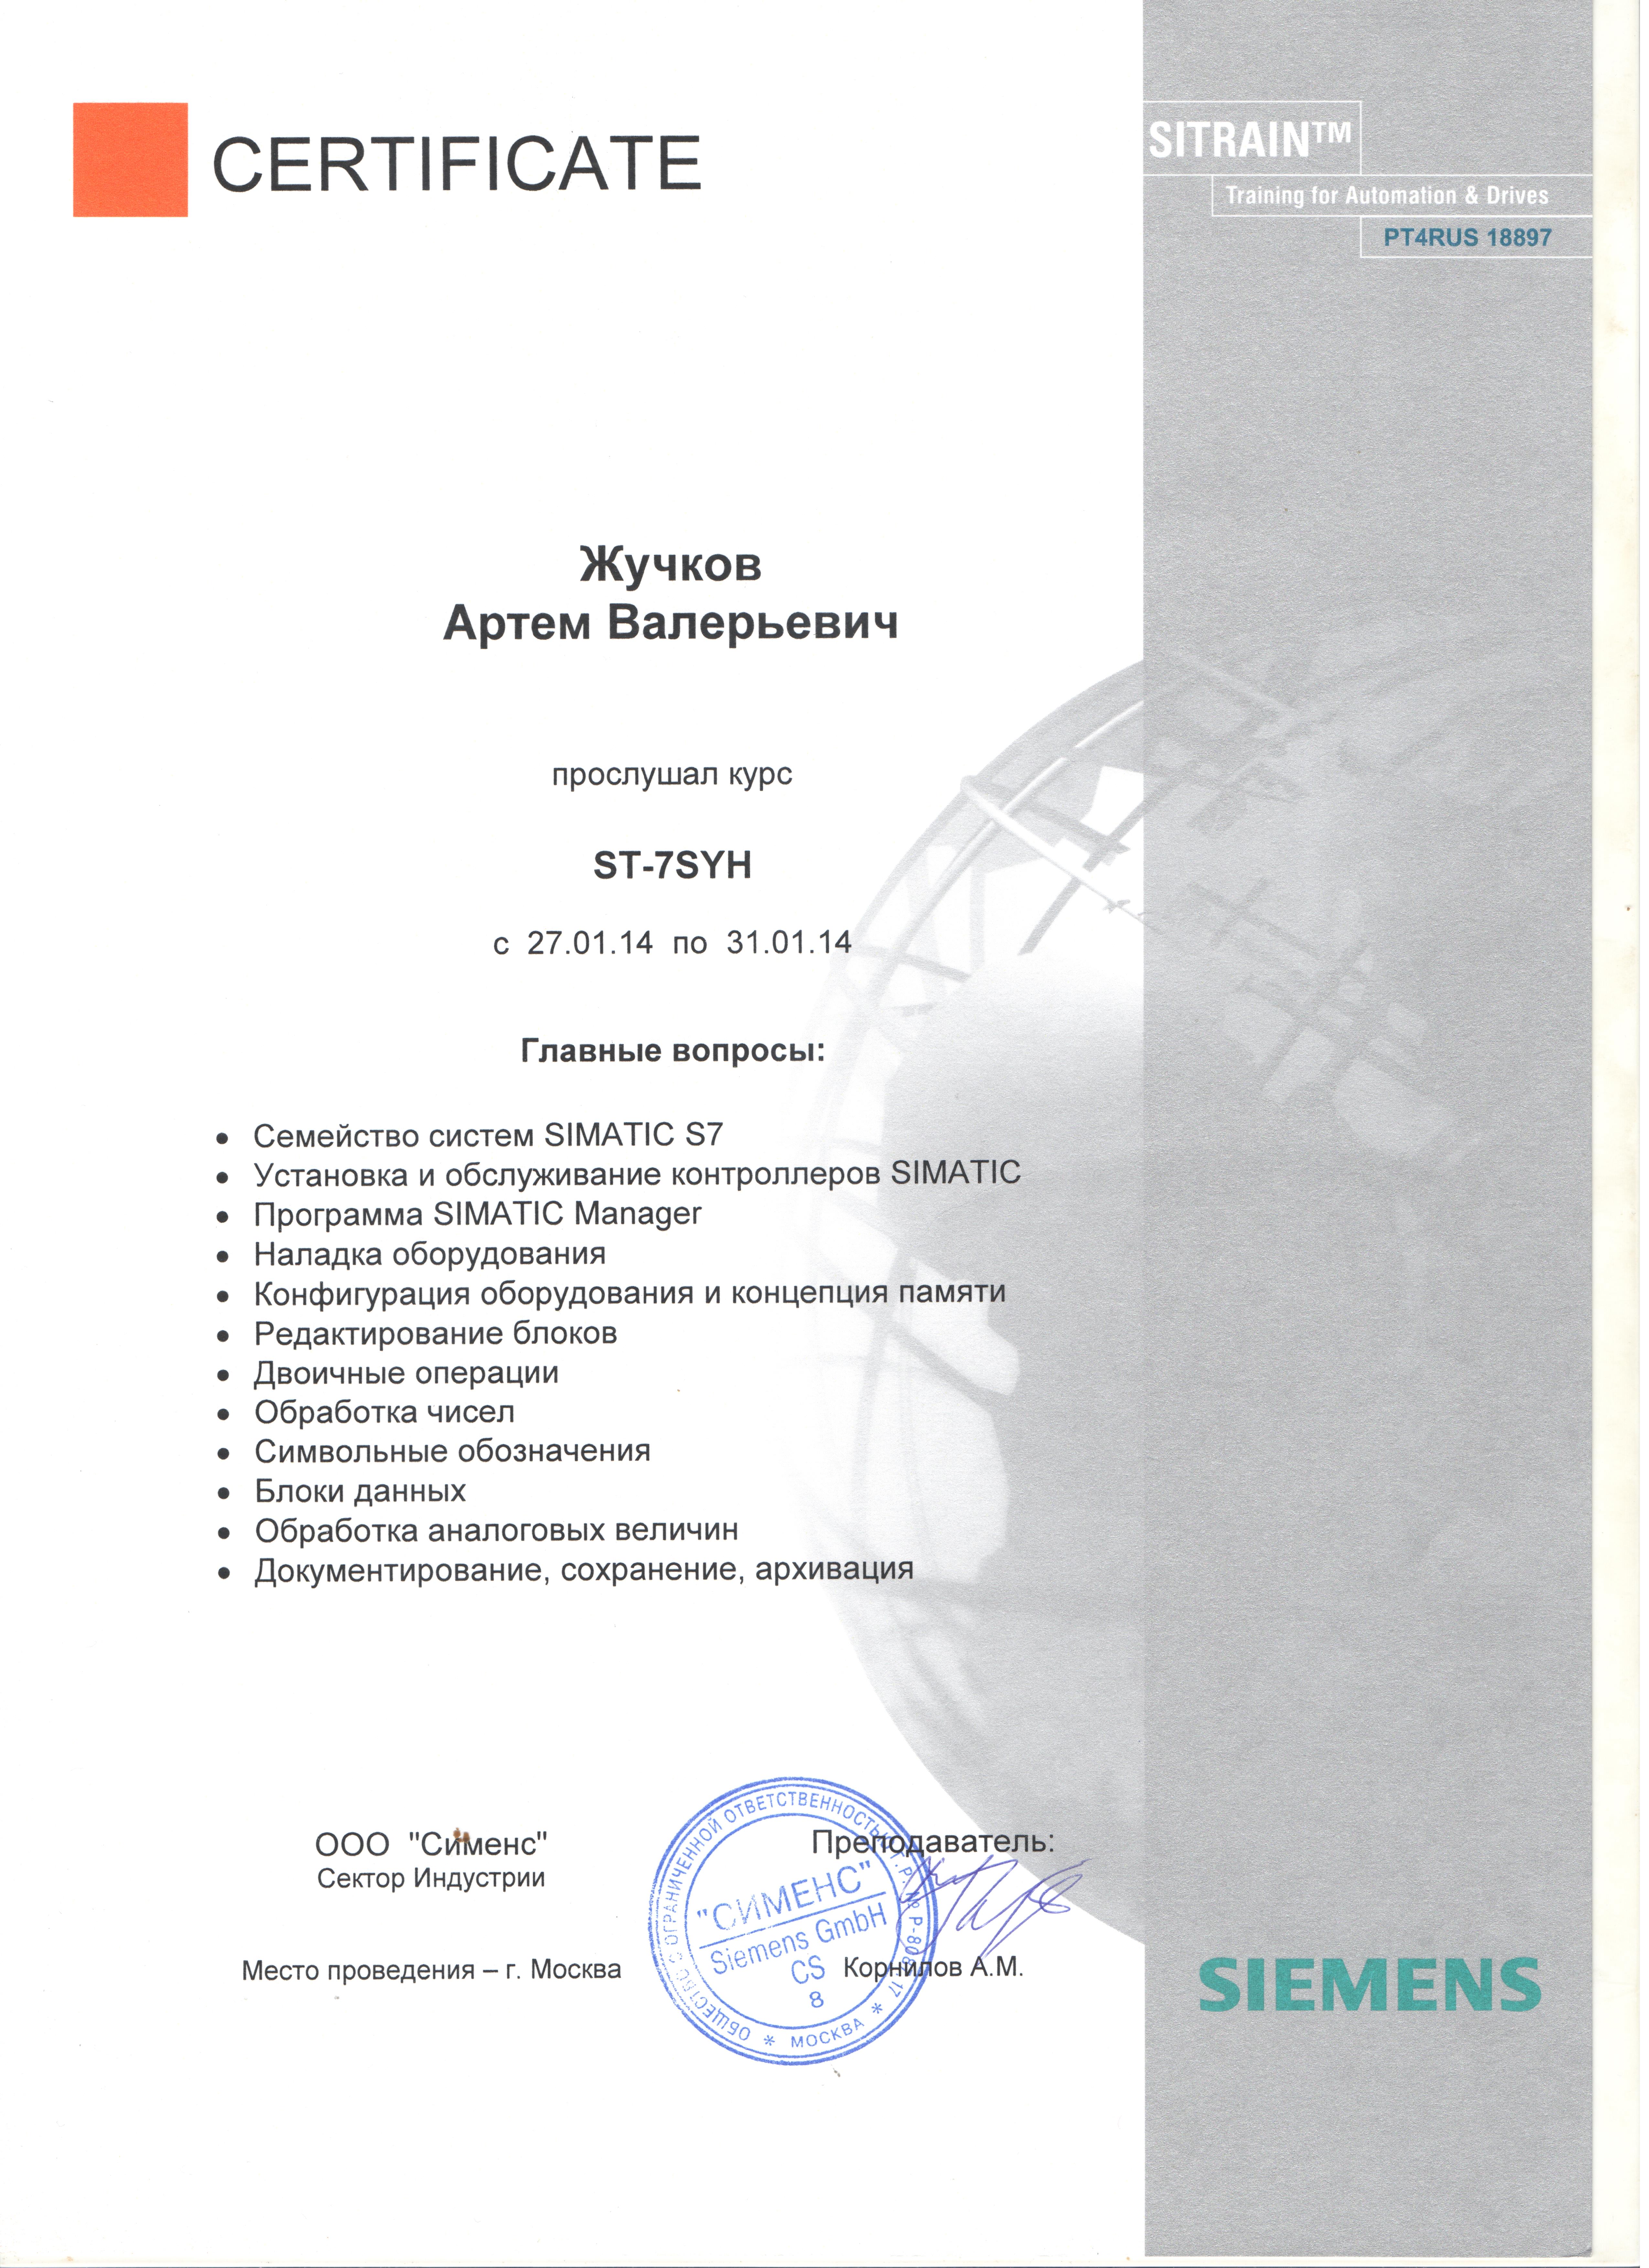 Сертификат о прохождении обучения Siemens: ST-7SYH